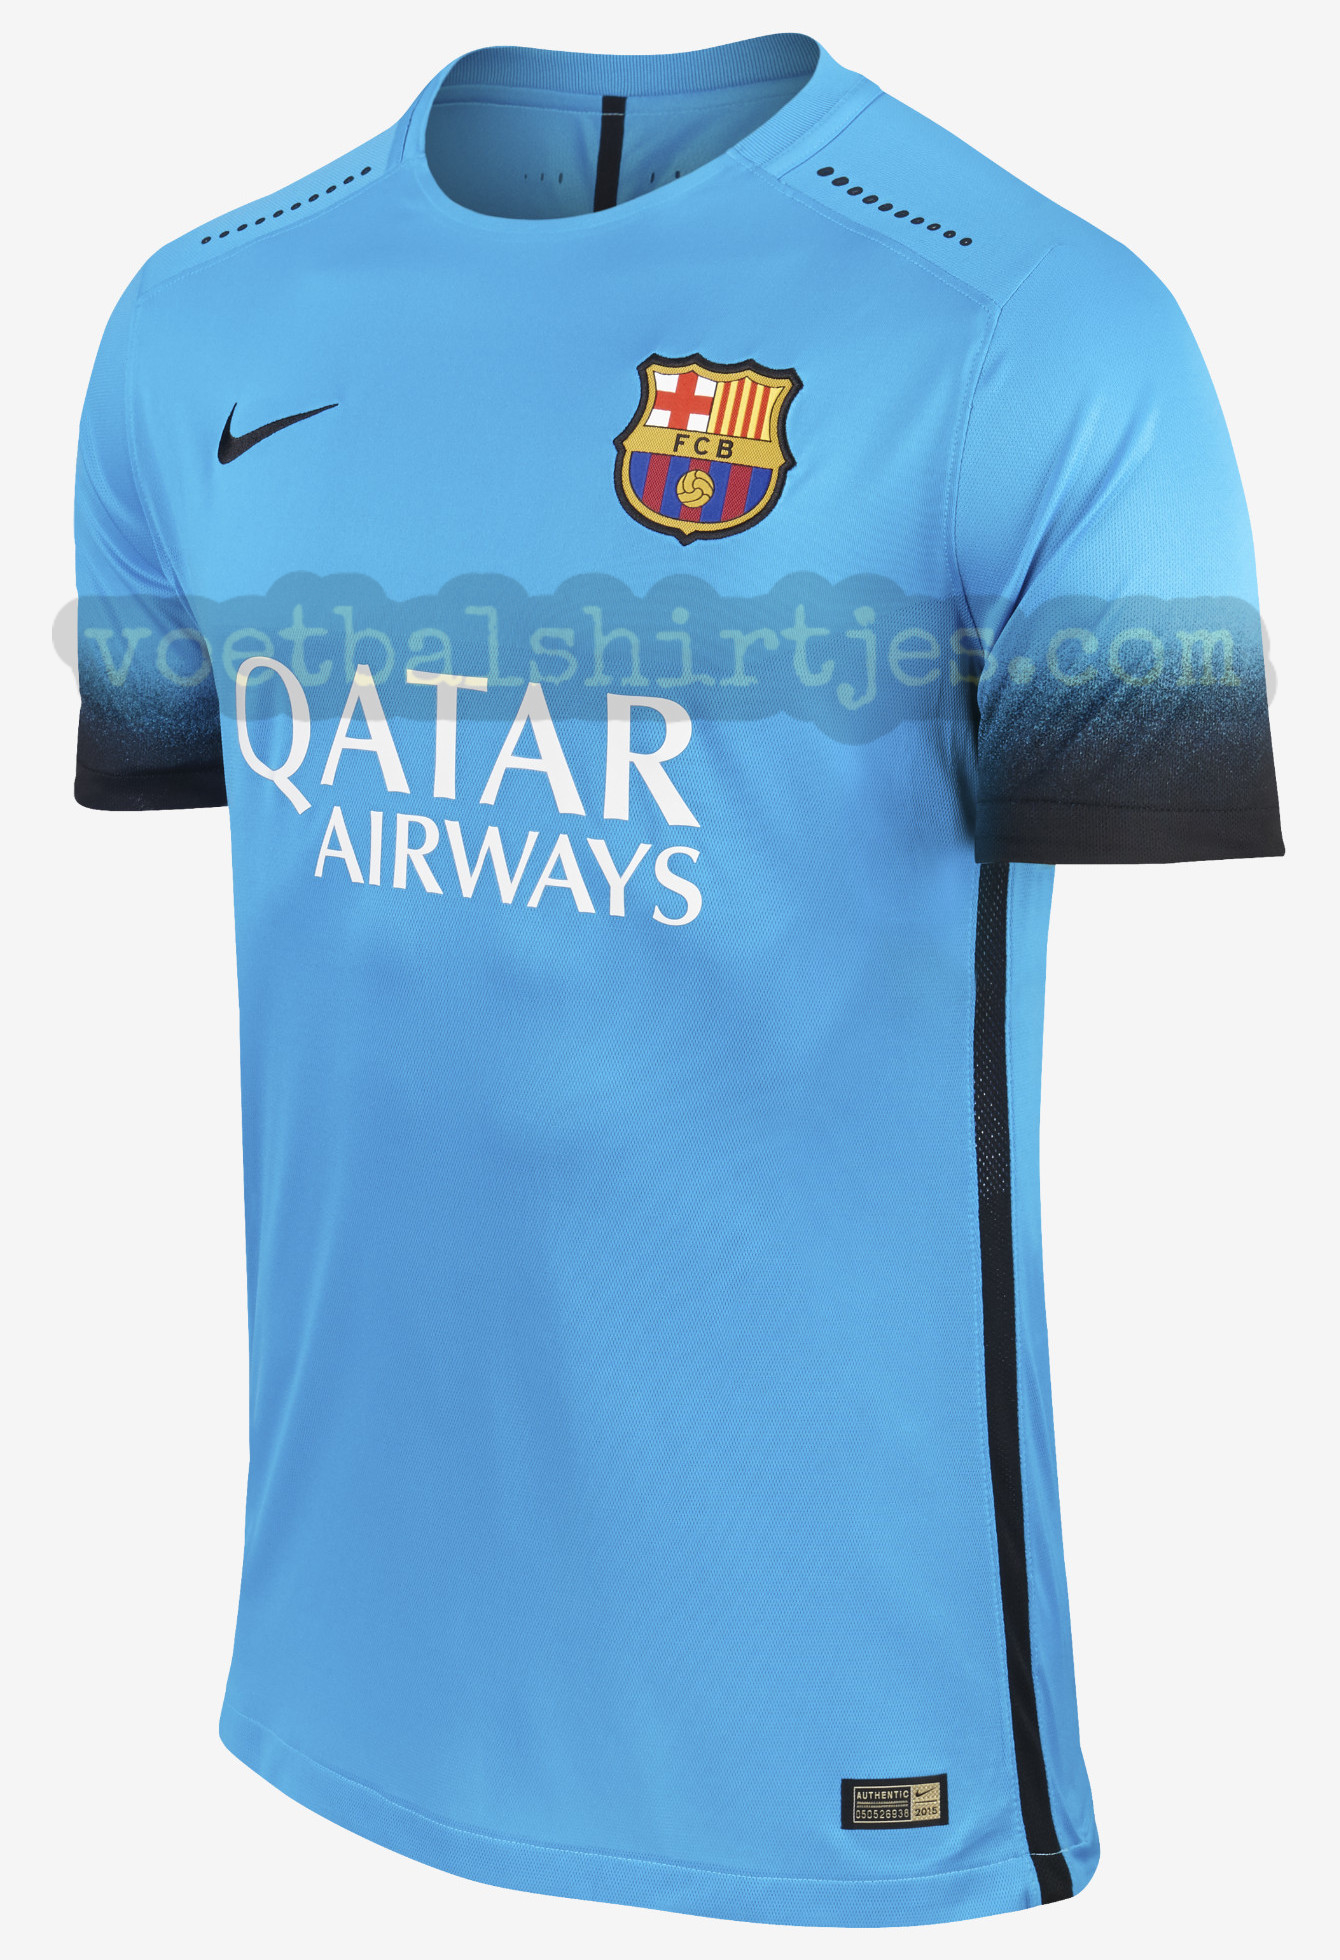 aanbidden Bloedbad ik betwijfel het FC Barcelona 3e shirt 2015/2016 - Barca 3rd kit 15/16